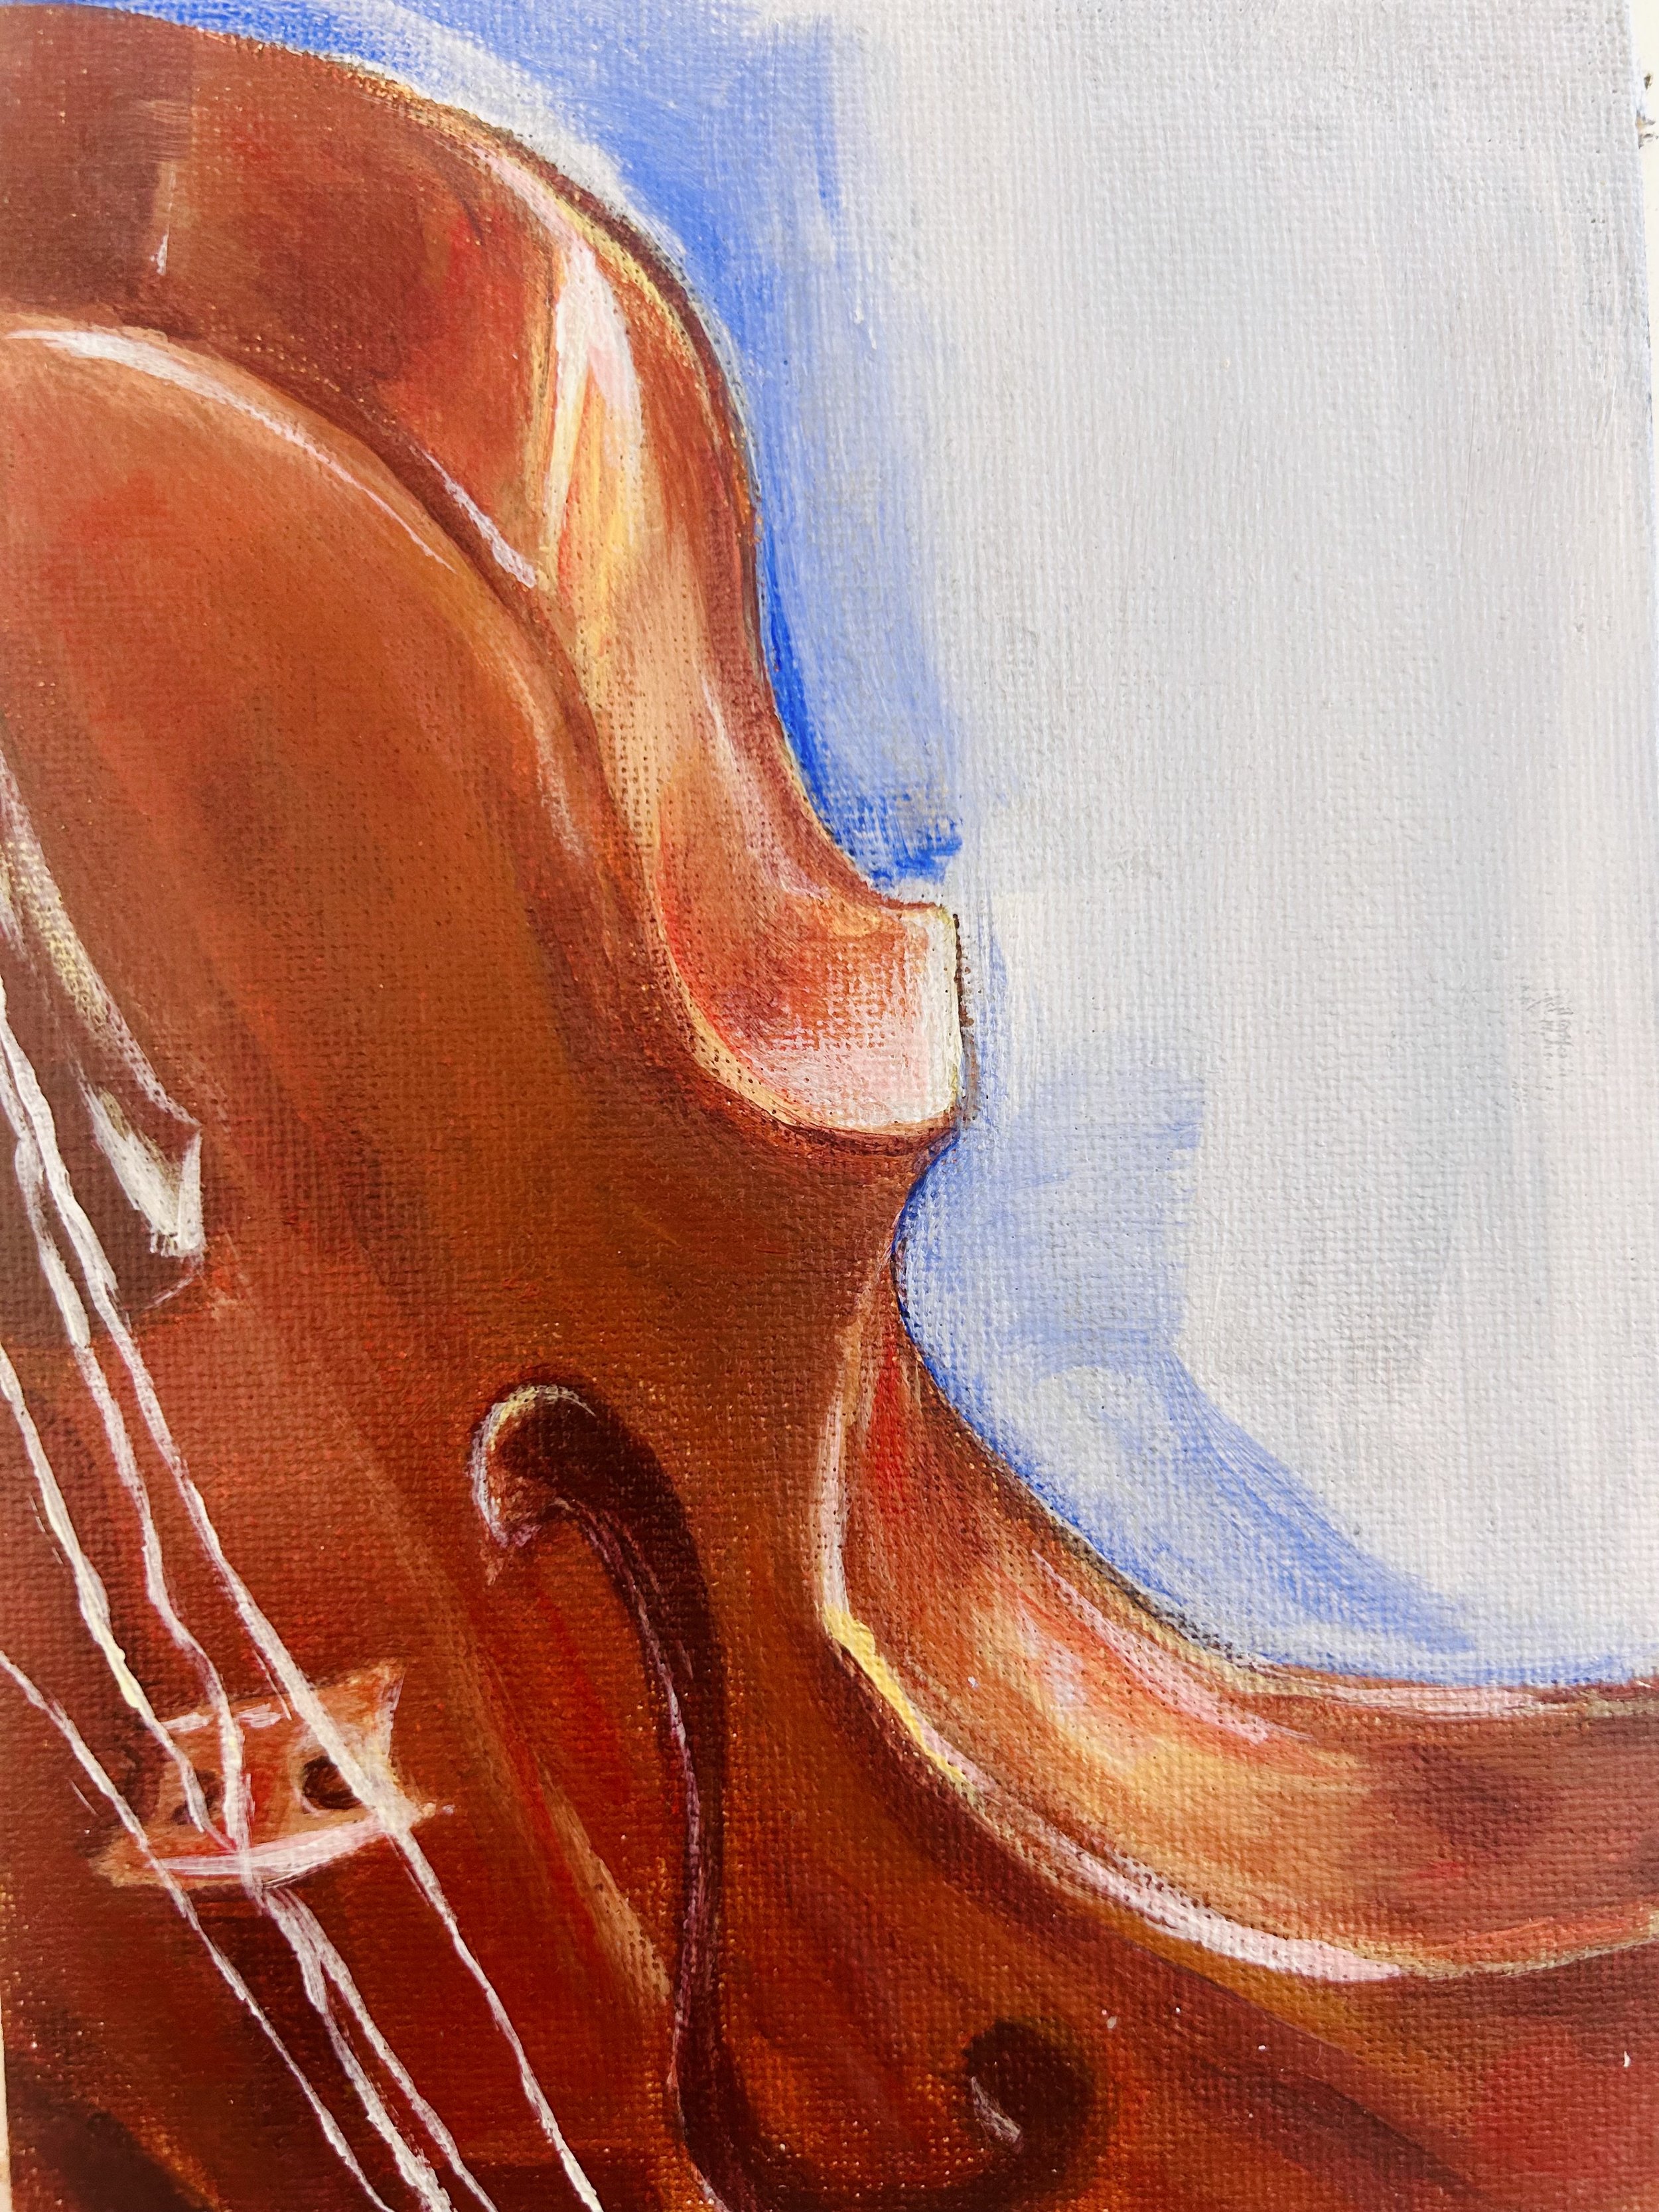 "Violin in acrylic"